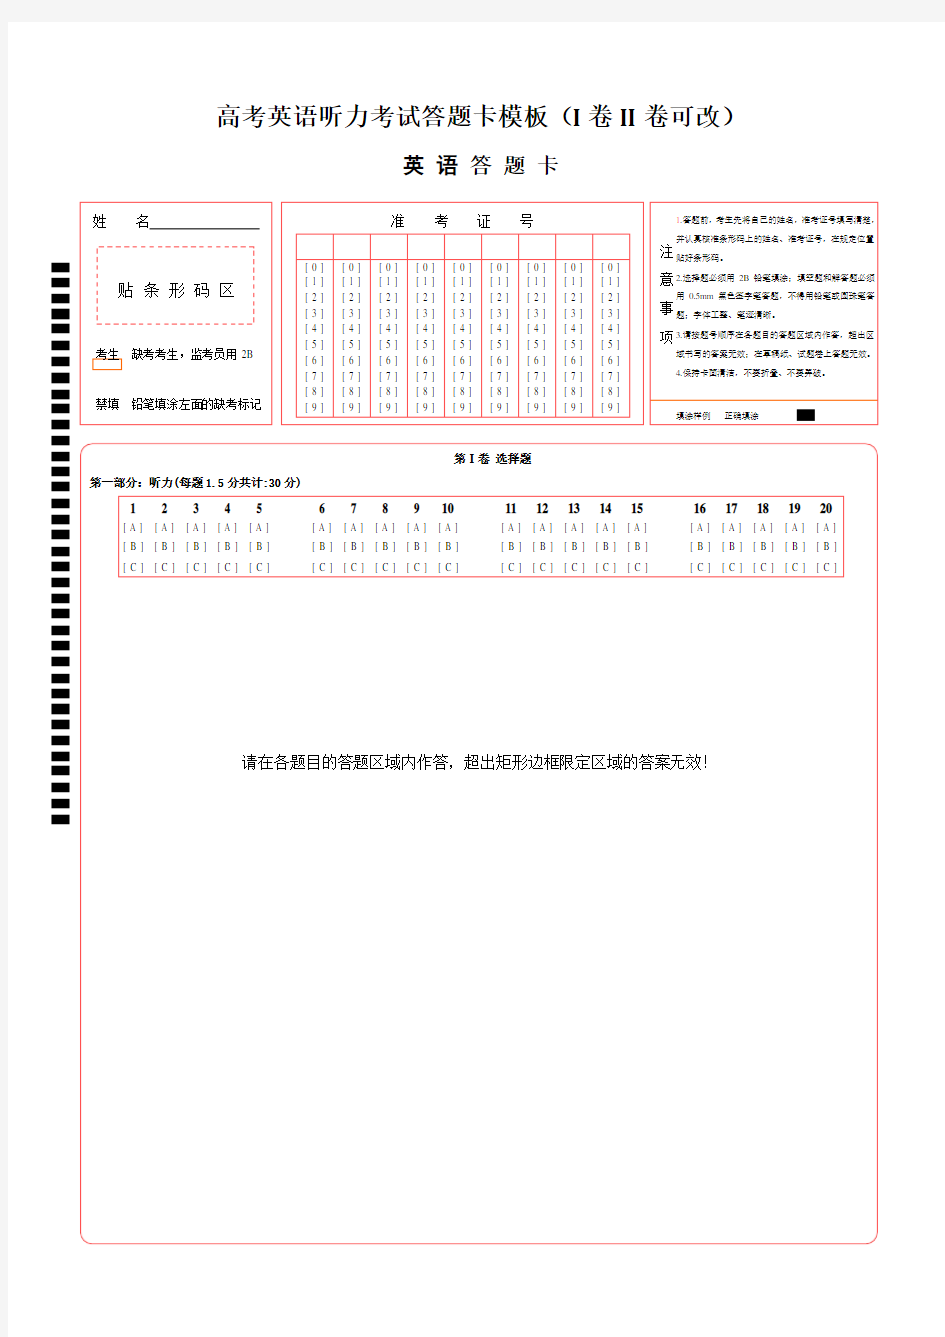 高考英语听力考试答题卡模板(I卷II卷可改)